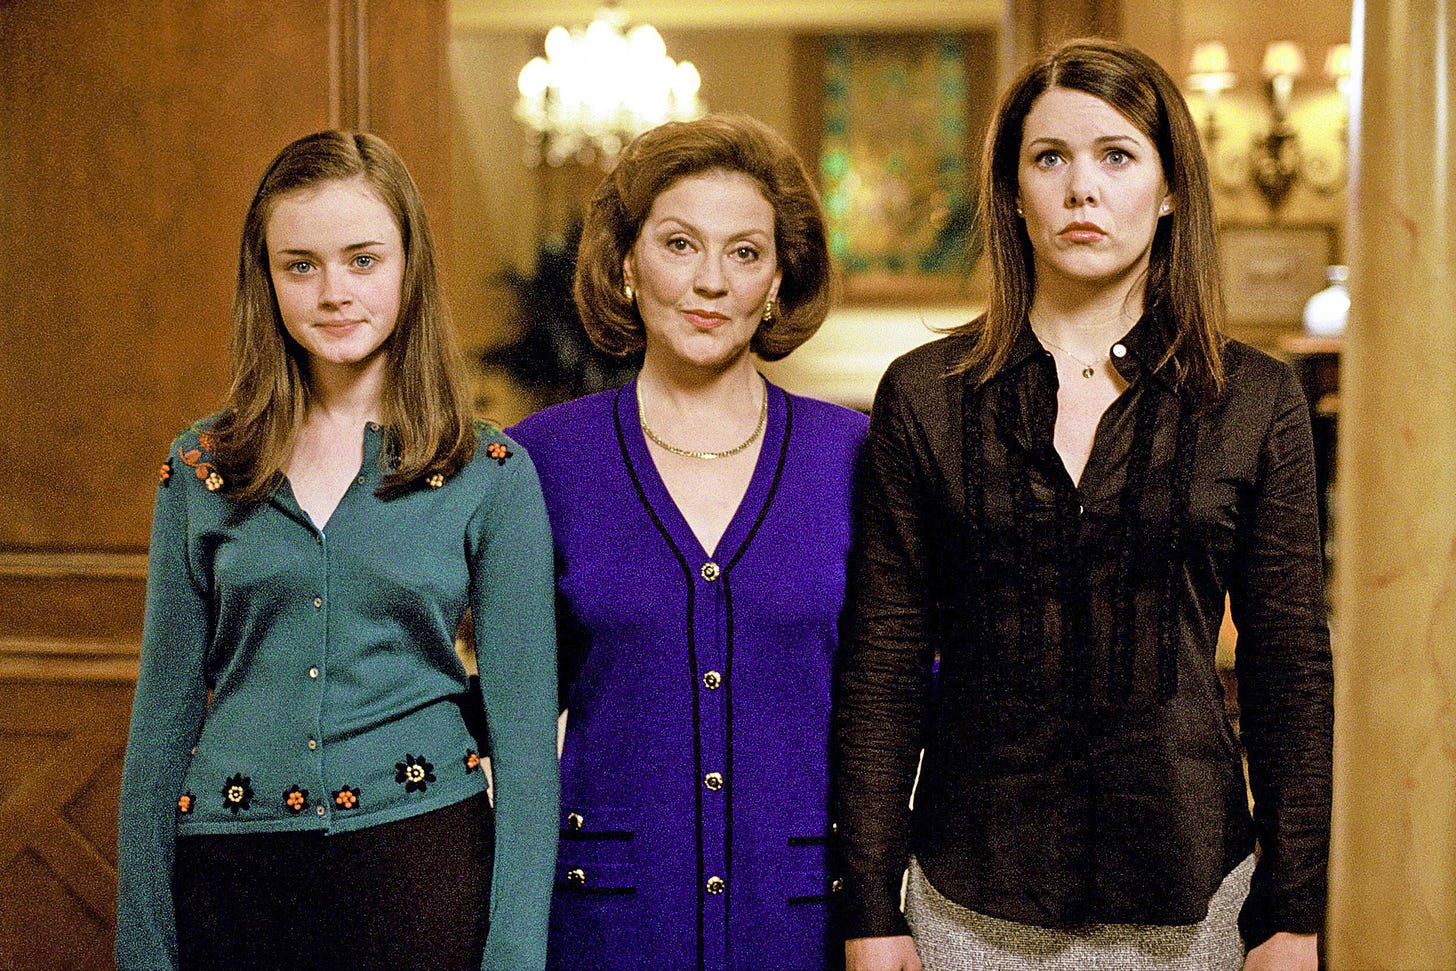 Gilmore Girls reunion photo: See the cast now! | EW.com